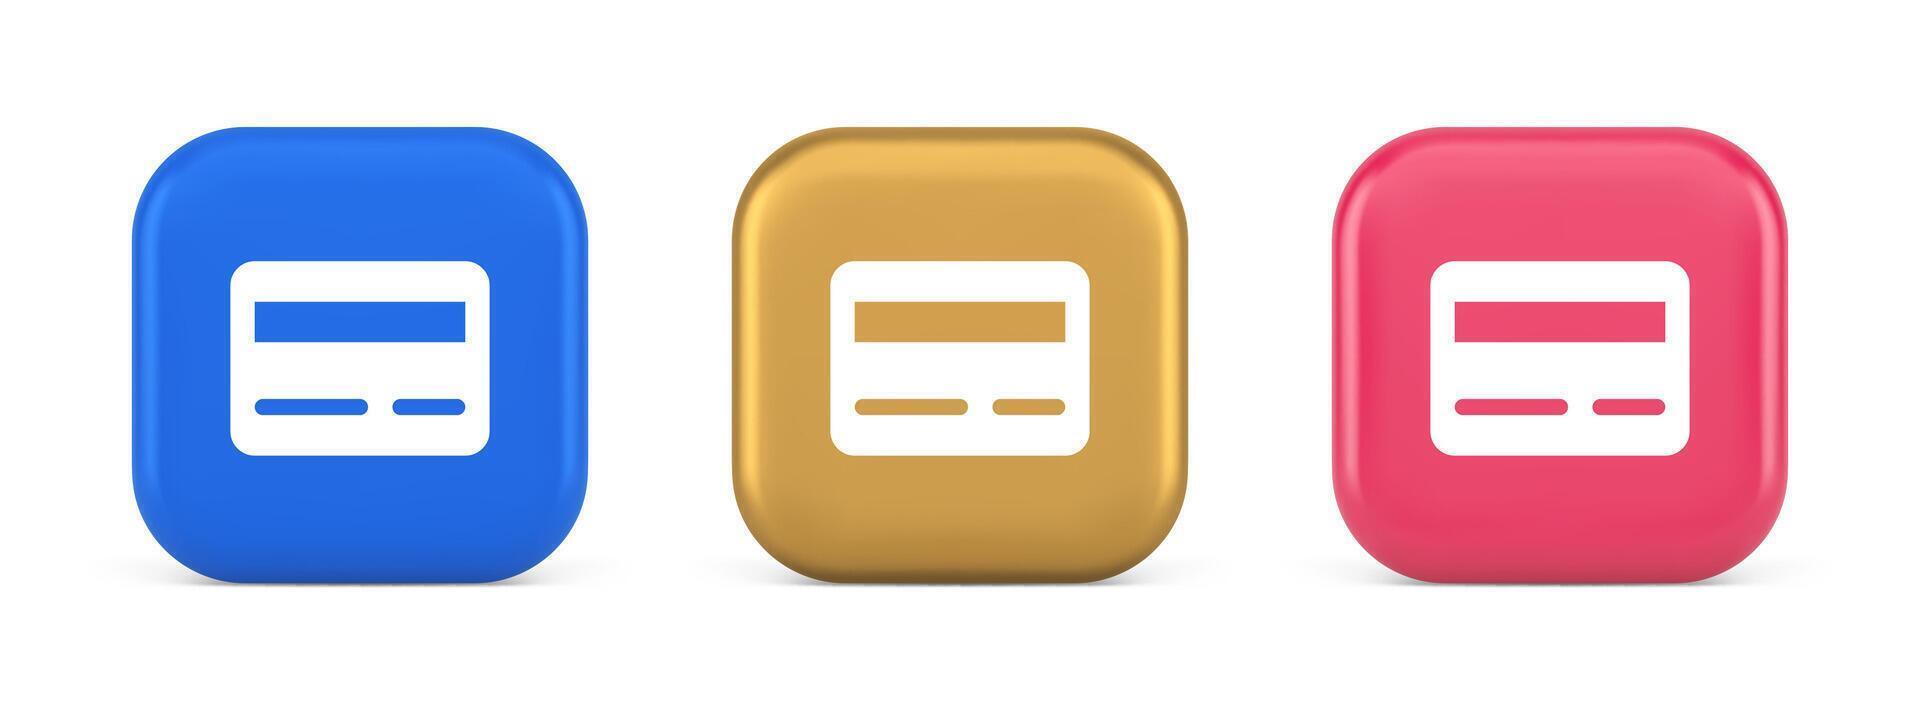 crédito débito tarjeta mi dinero pago botón digital financiero bancario cuenta 3d realista icono vector